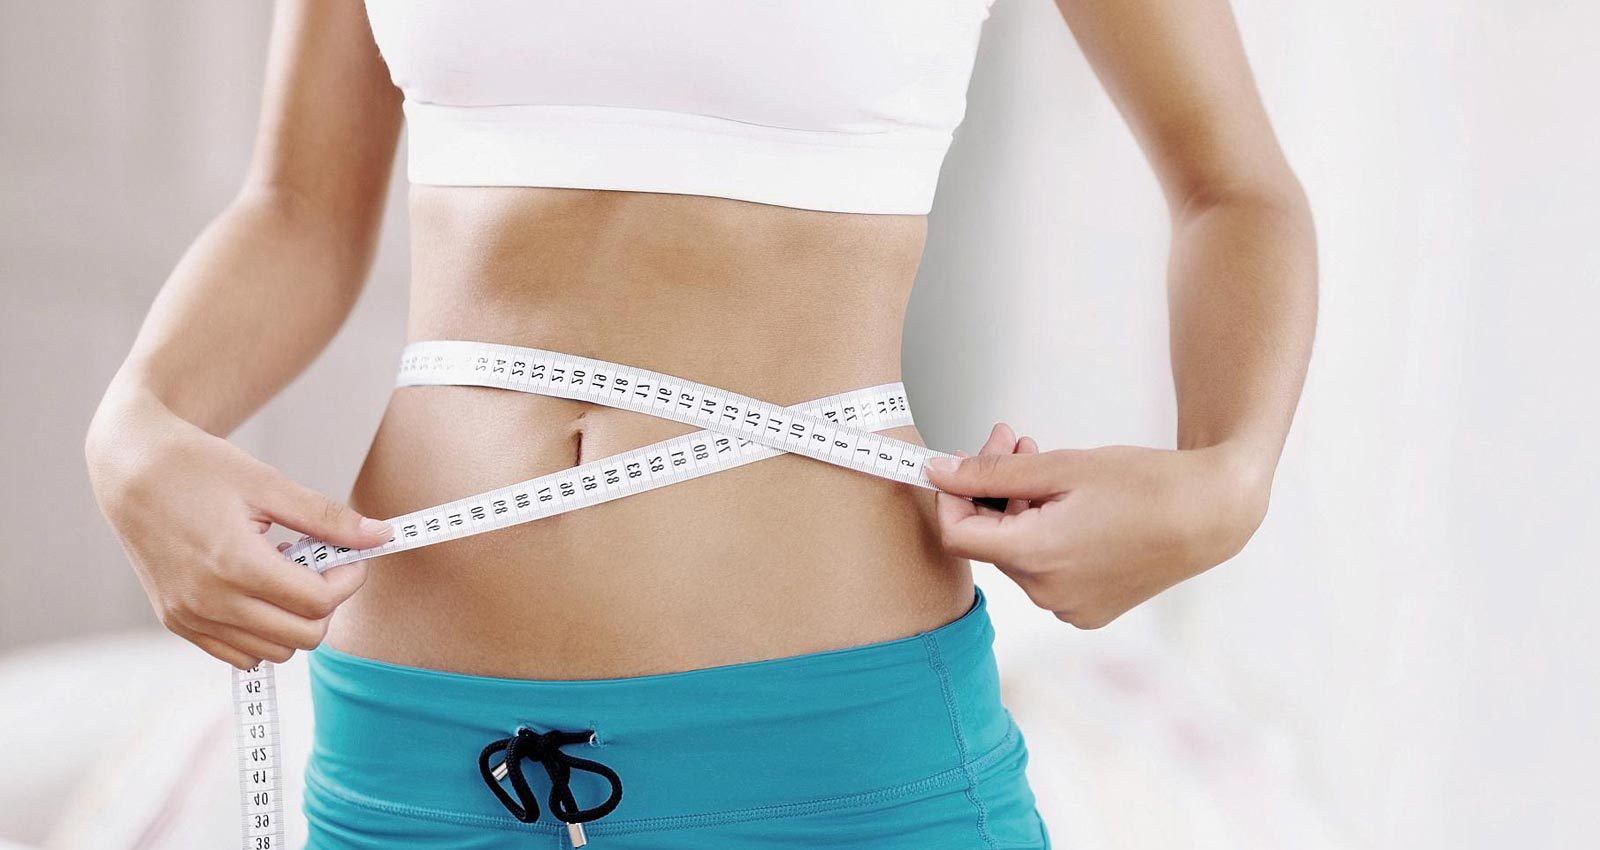 این عمل جراحی اغلب مشکلات مرتبط به اضافه وزن بالا را معالجه و یا به طور کامل از بین می برد